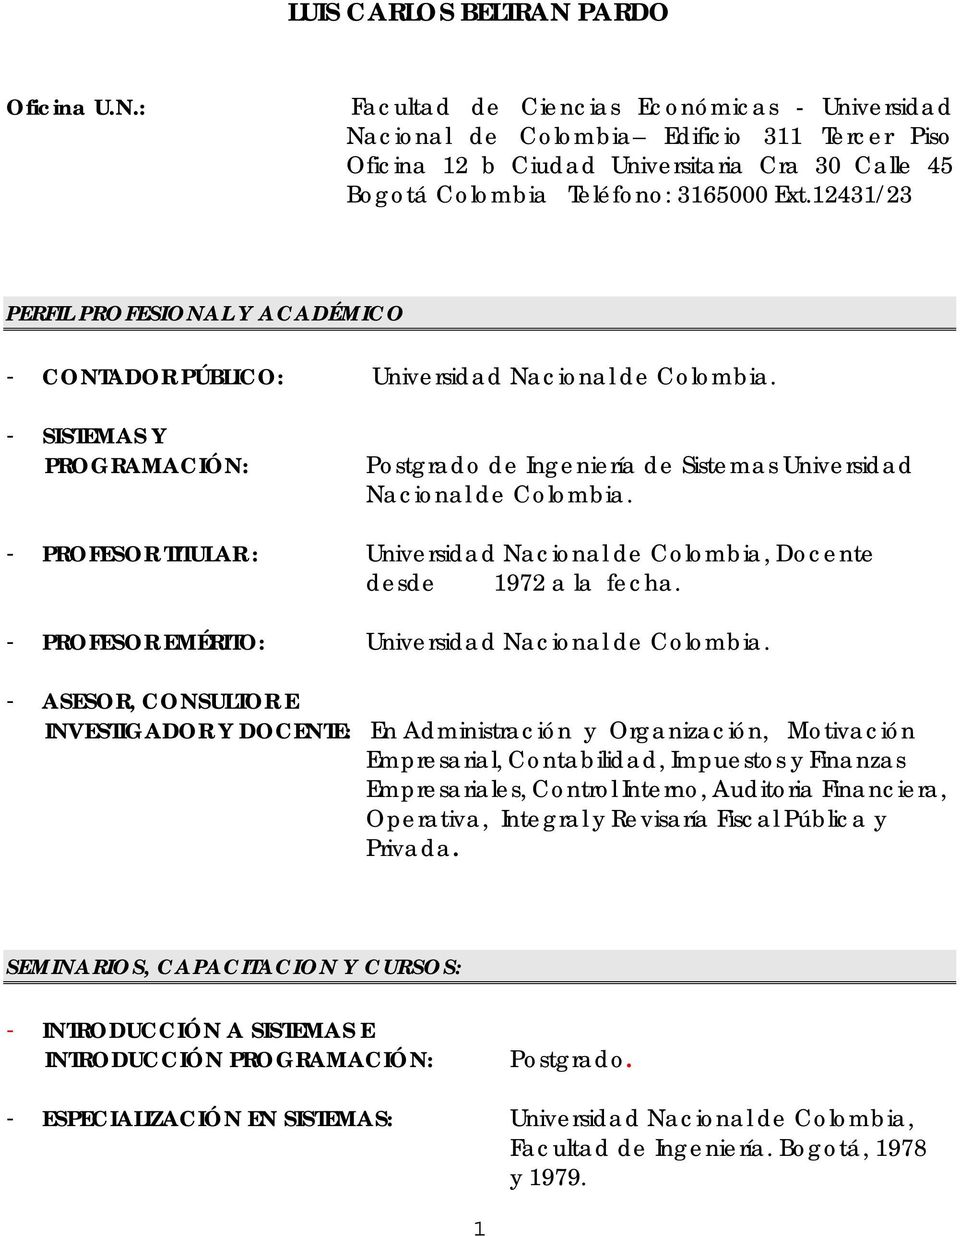 12431/23 PERFIL PROFESIONAL Y ACADÉMICO - CONTADOR PÚBLICO: Universidad Nacional de Colombia. - SISTEMAS Y PROGRAMACIÓN: Postgrado de Ingeniería de Sistemas Universidad Nacional de Colombia.